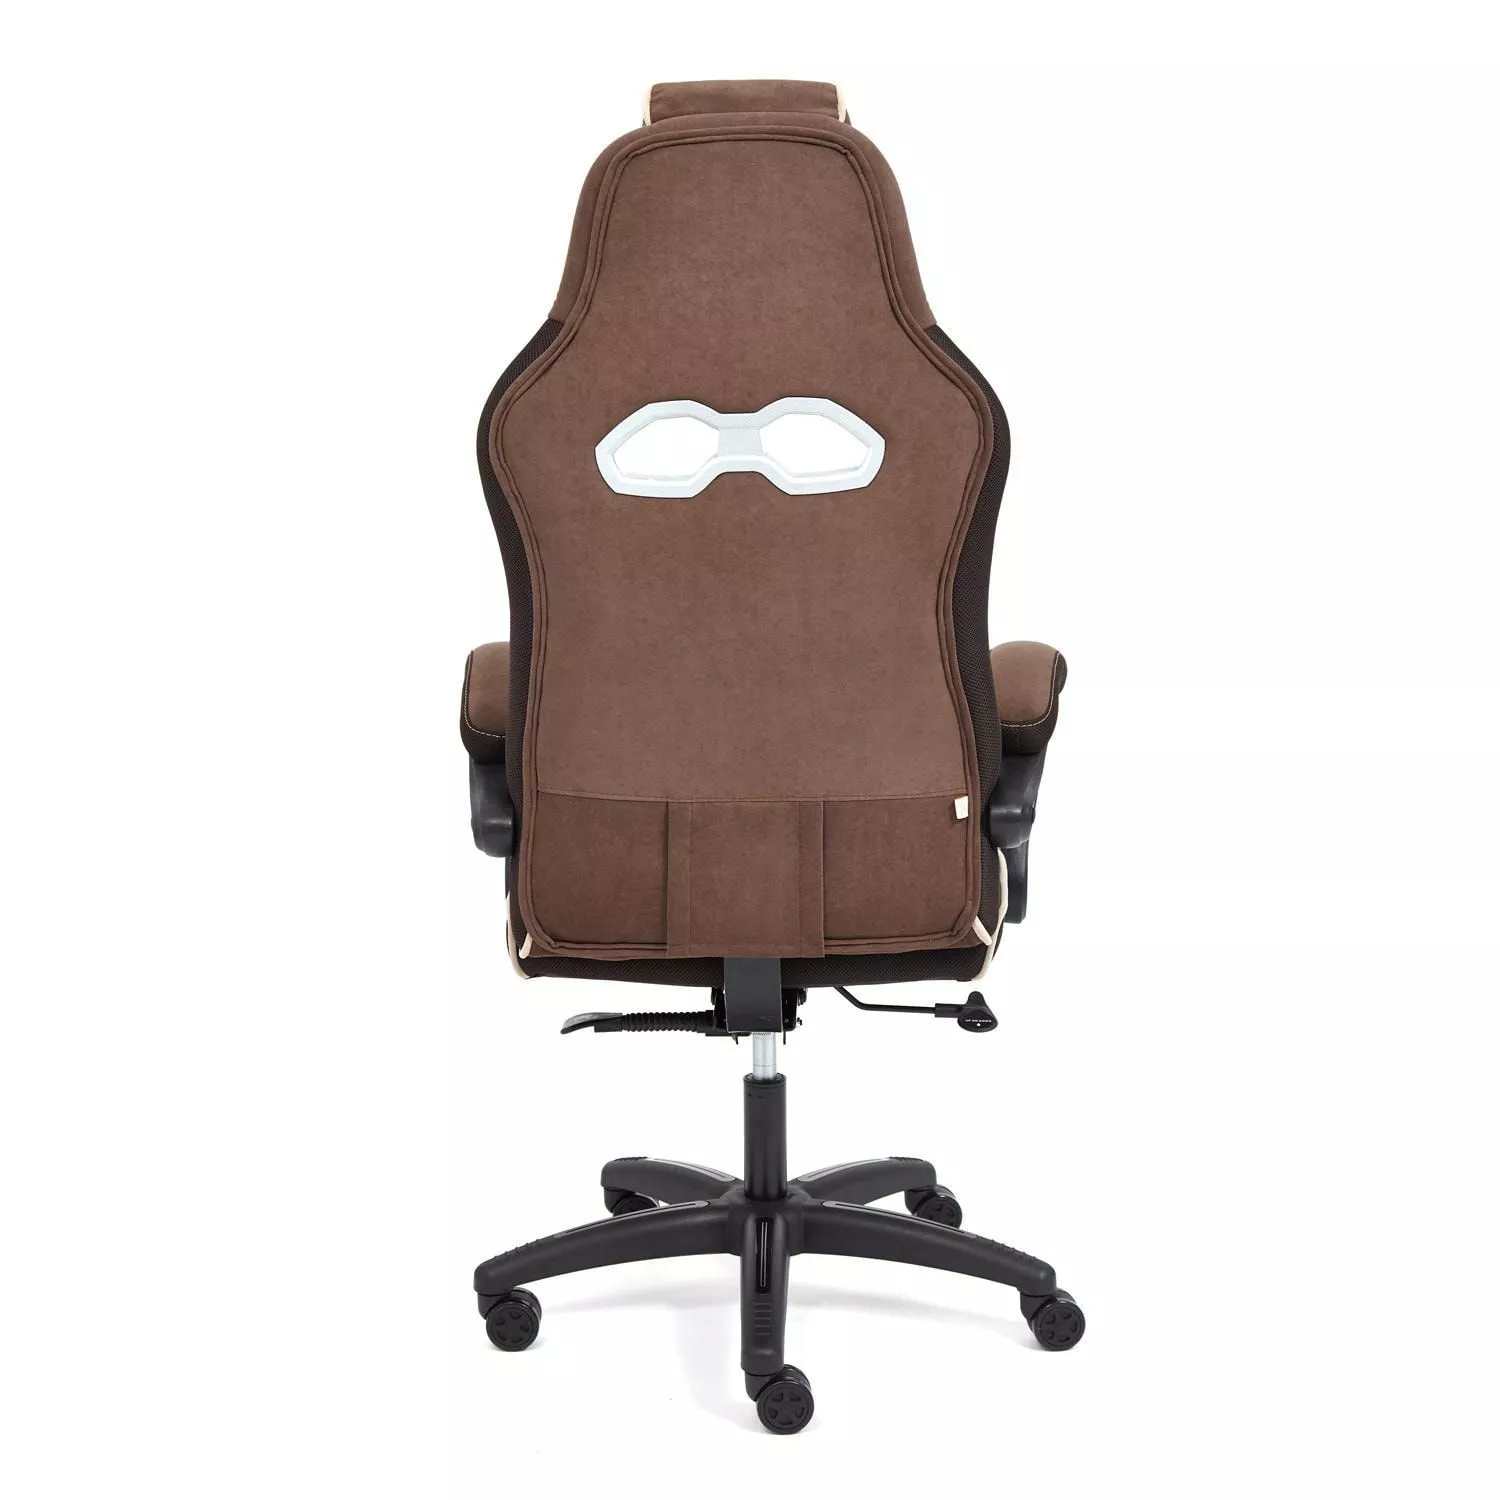 Кресло ARENA коричневый / бежевый